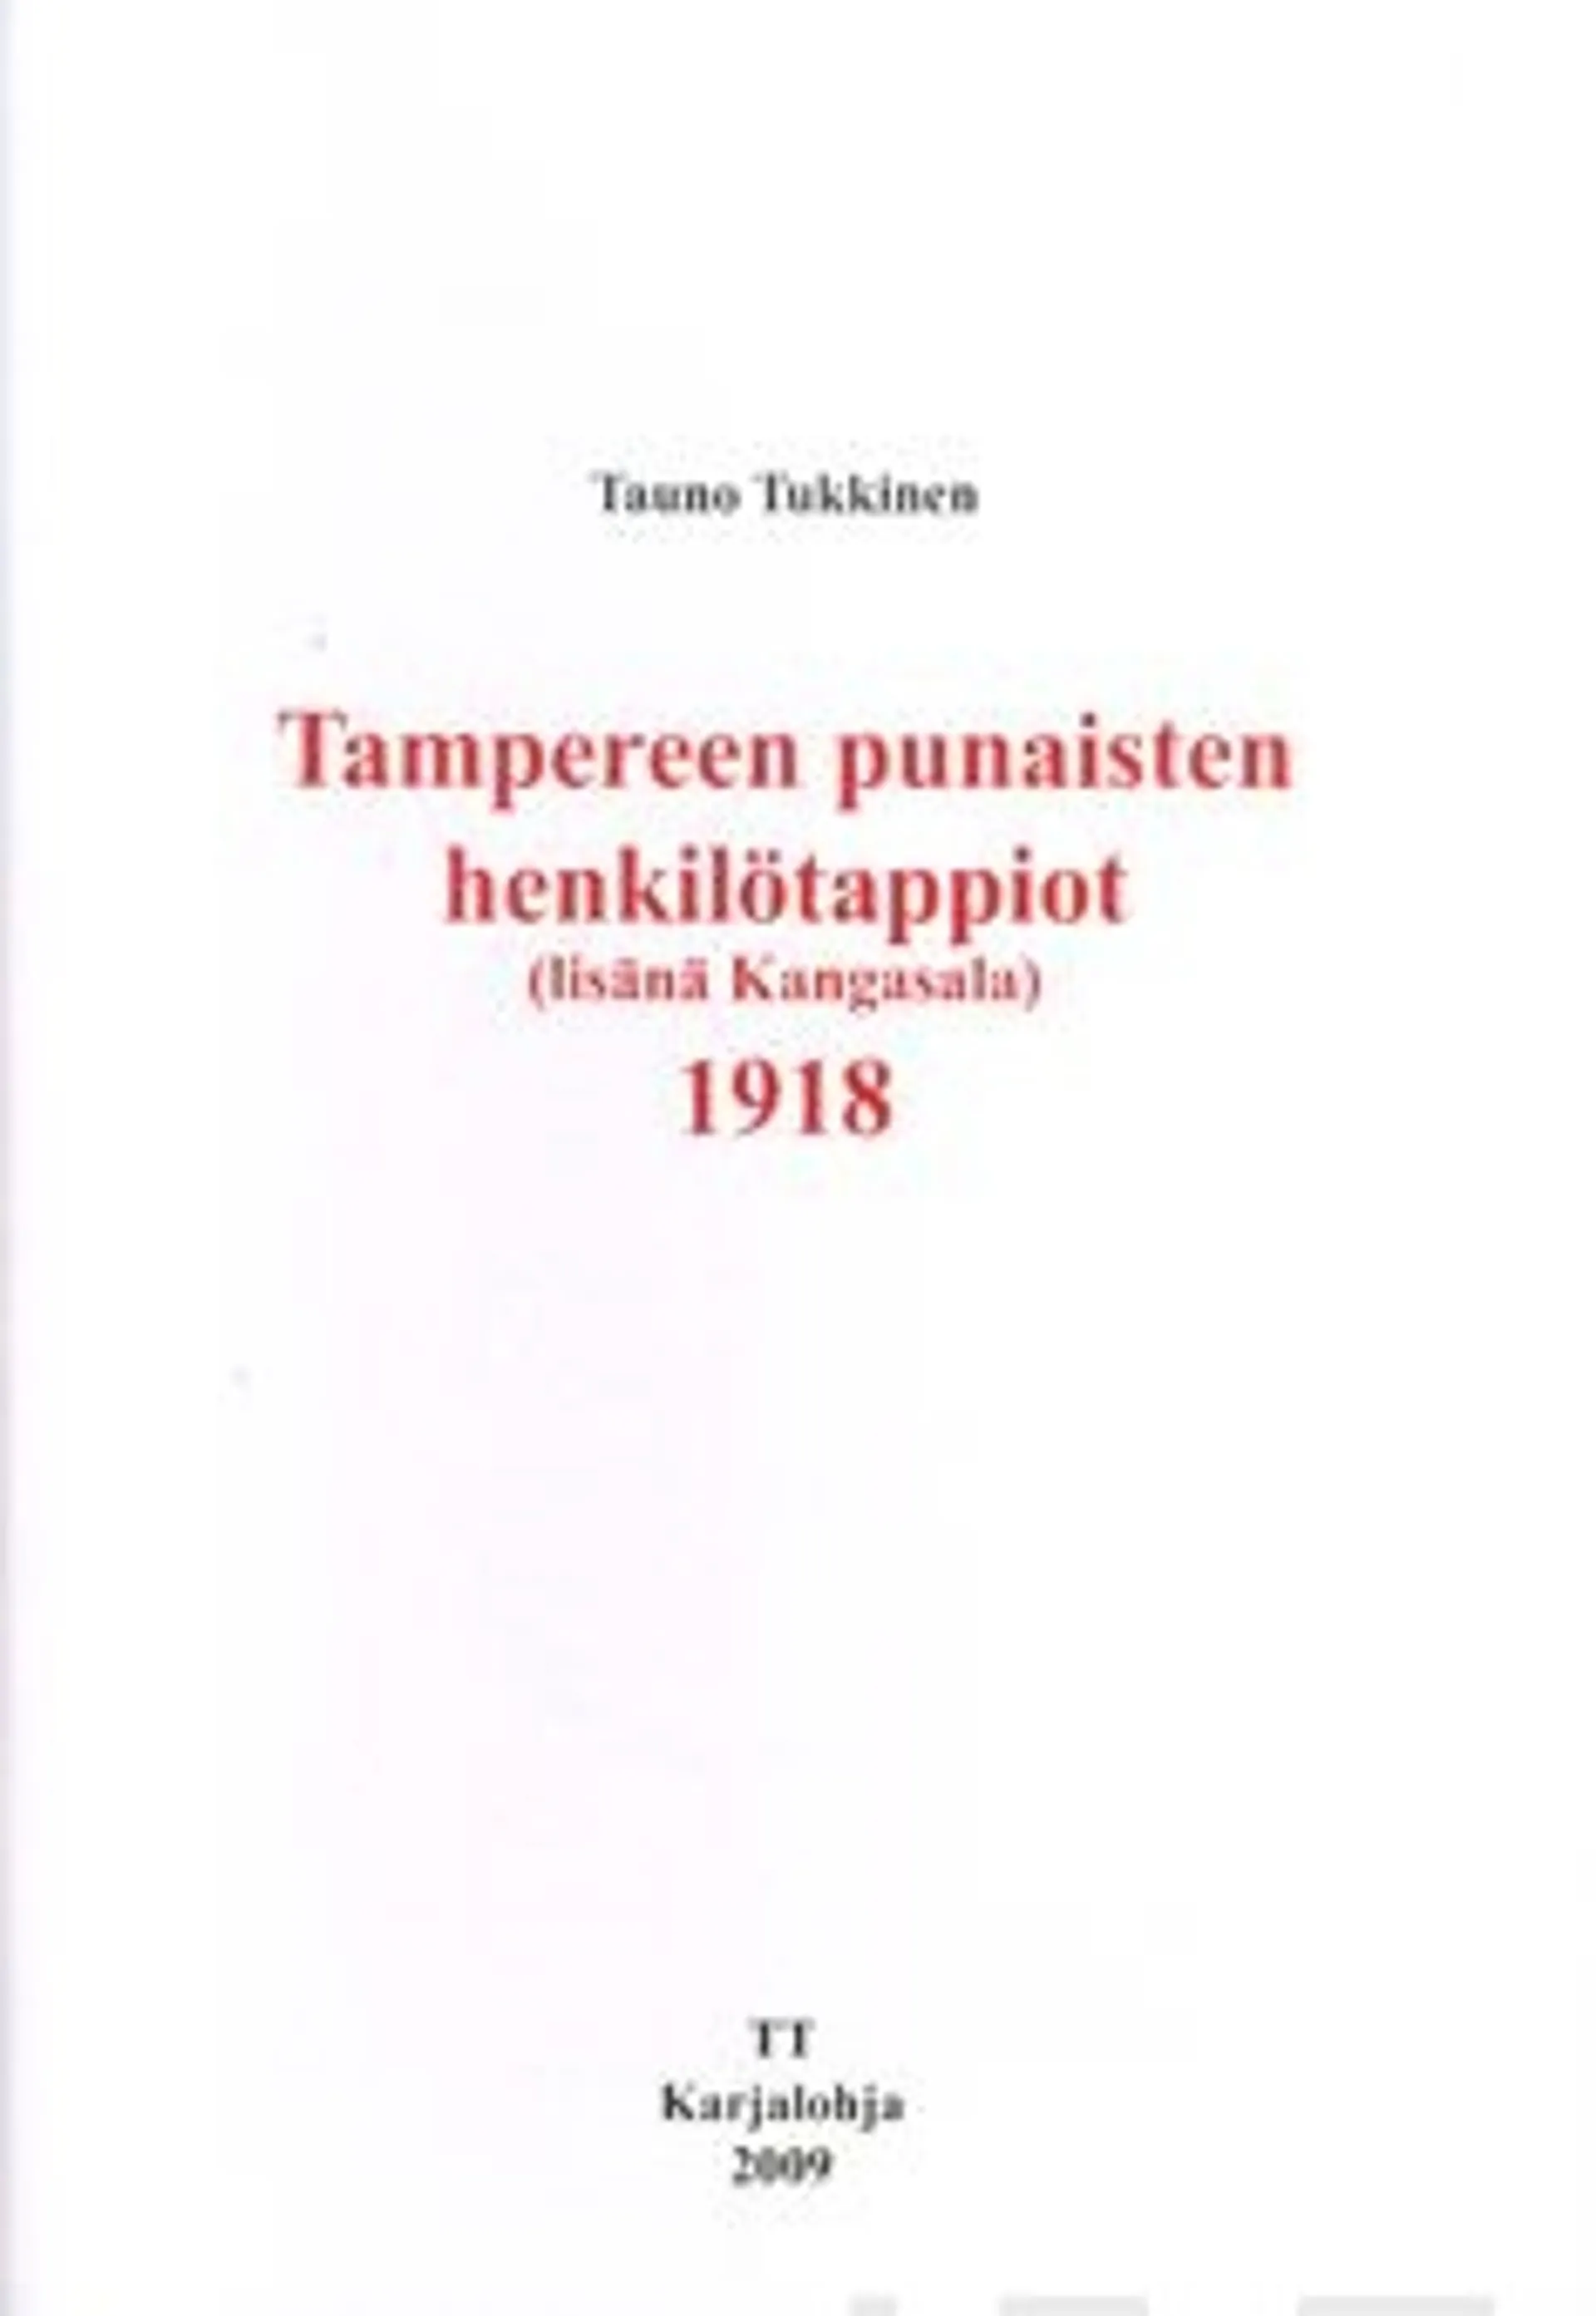 Tukkinen, Tampereen ja Kangasalan punaisten henkilötappiot 1918 (lisänä Kangasala)